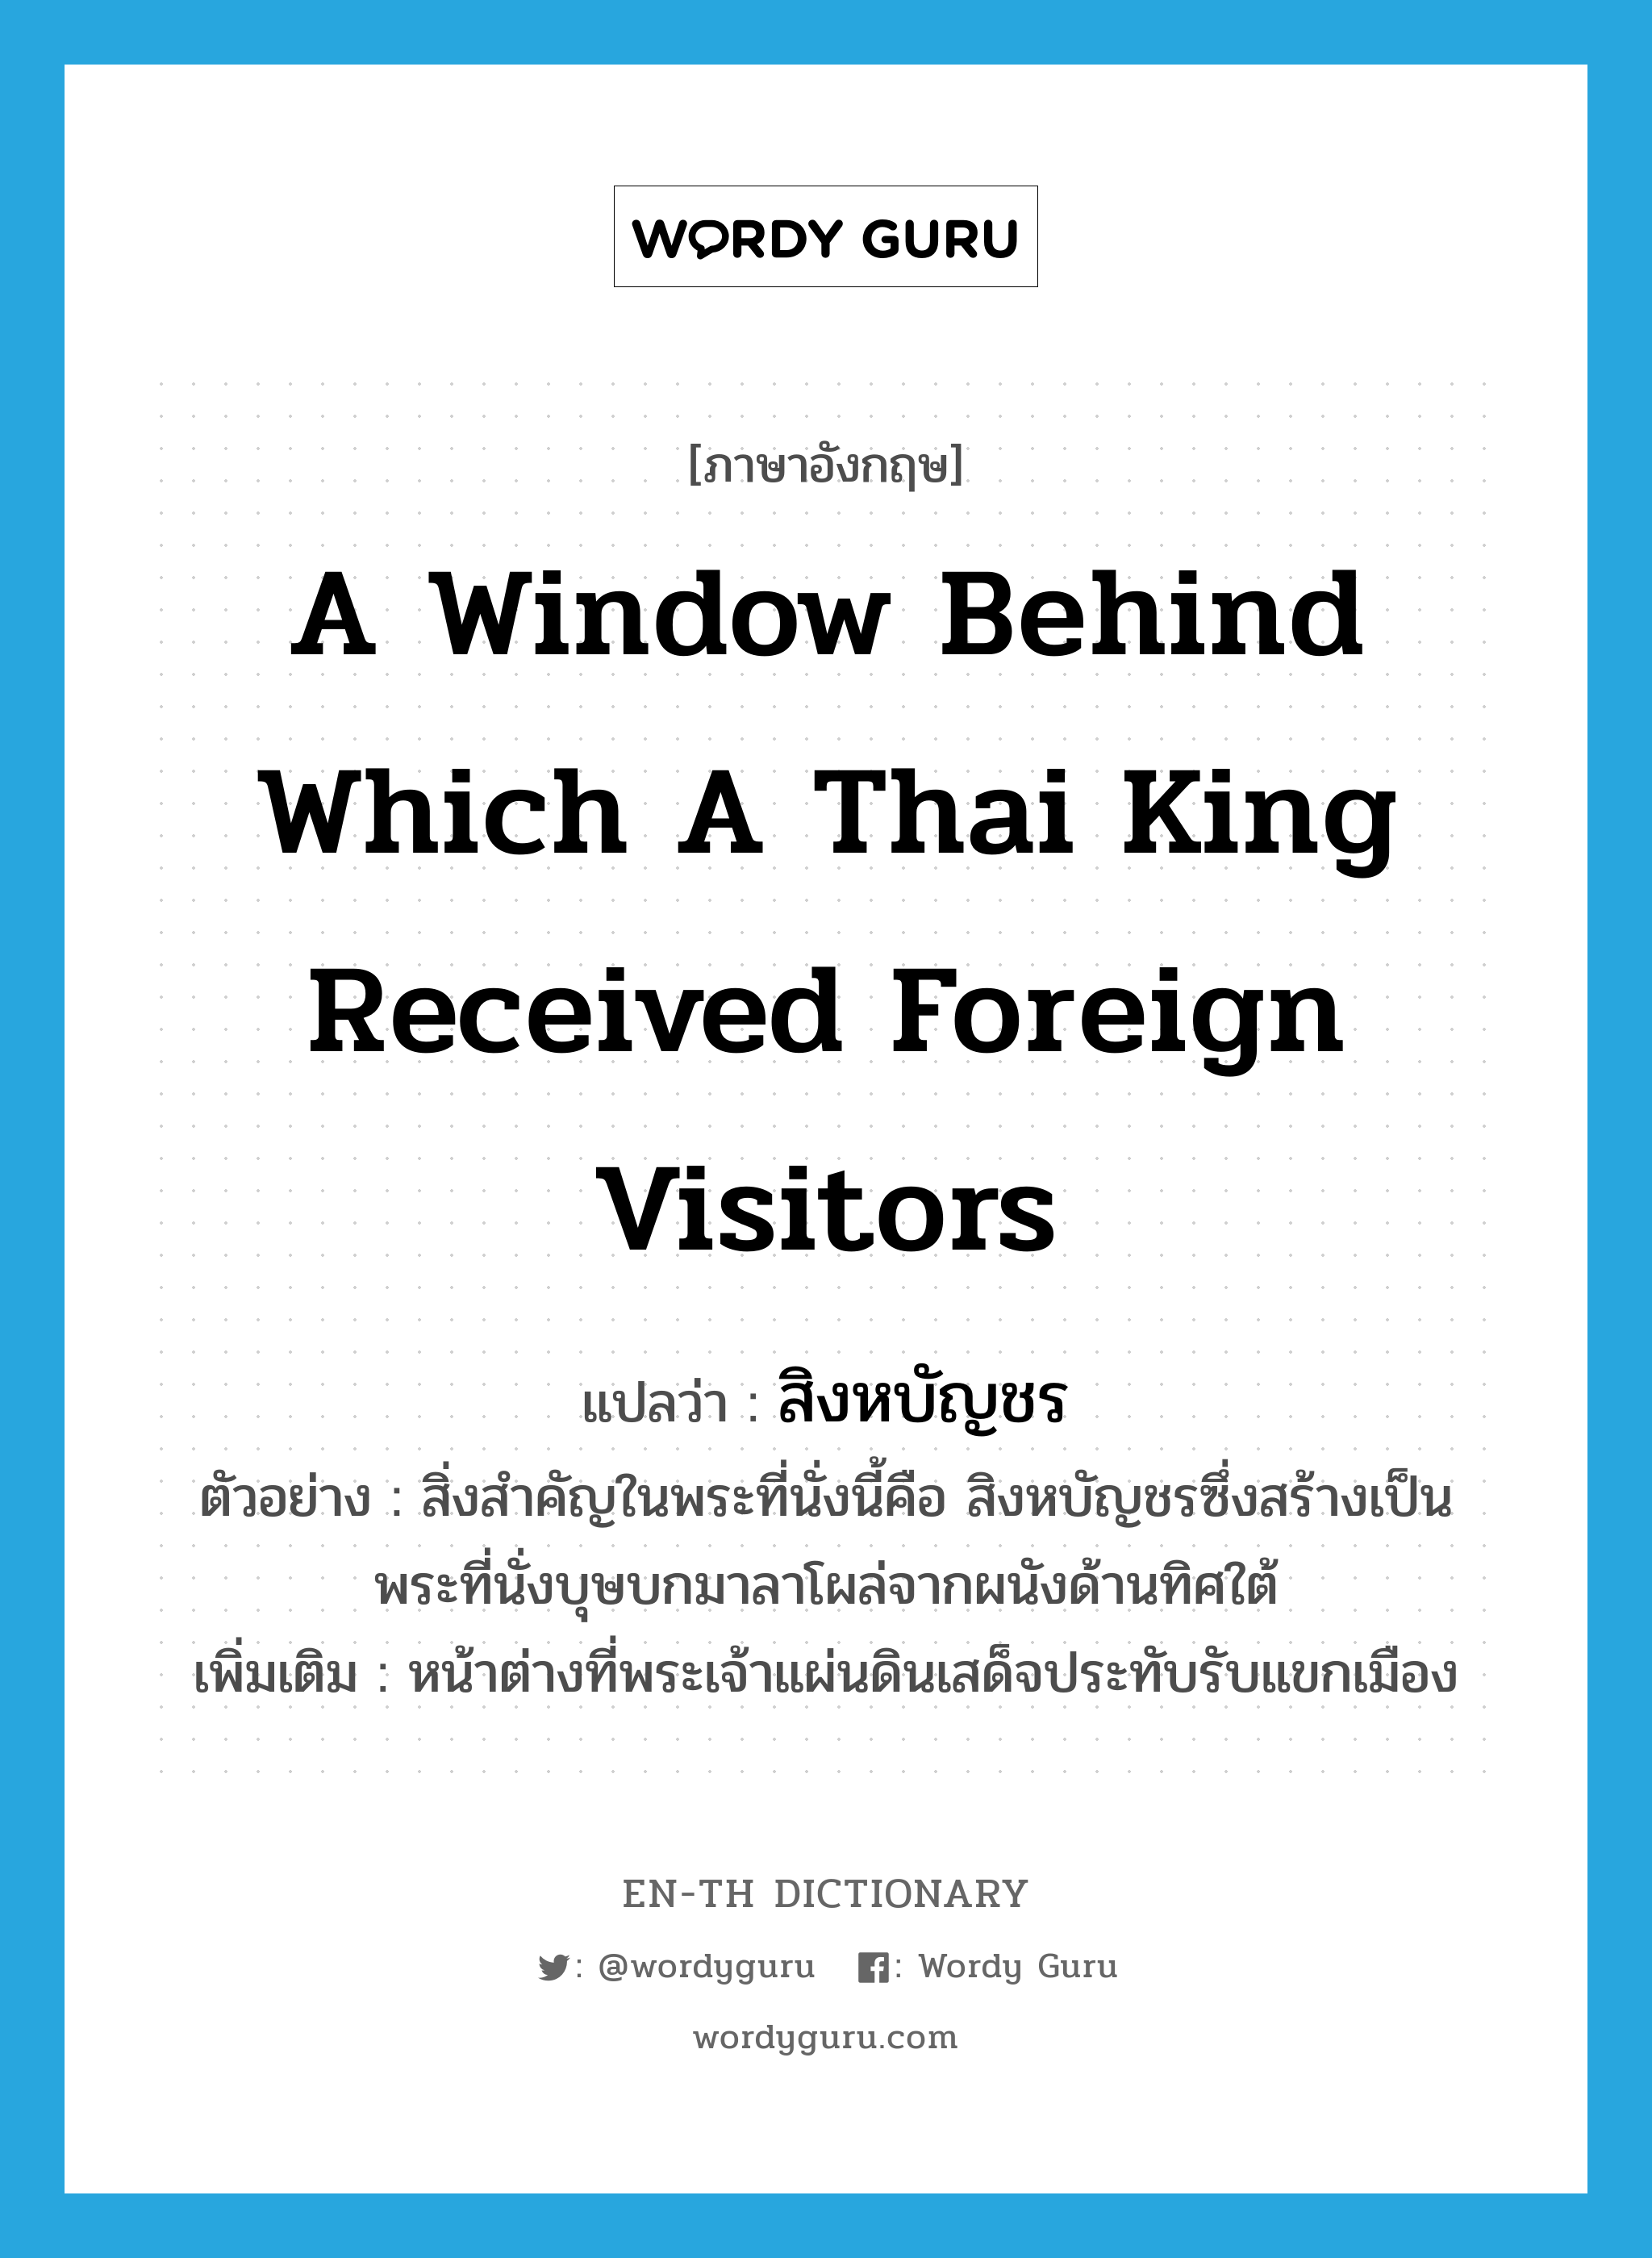 สิงหบัญชร ภาษาอังกฤษ?, คำศัพท์ภาษาอังกฤษ สิงหบัญชร แปลว่า a window behind which a Thai King received foreign visitors ประเภท N ตัวอย่าง สิ่งสำคัญในพระที่นั่งนี้คือ สิงหบัญชรซึ่งสร้างเป็นพระที่นั่งบุษบกมาลาโผล่จากผนังด้านทิศใต้ เพิ่มเติม หน้าต่างที่พระเจ้าแผ่นดินเสด็จประทับรับแขกเมือง หมวด N